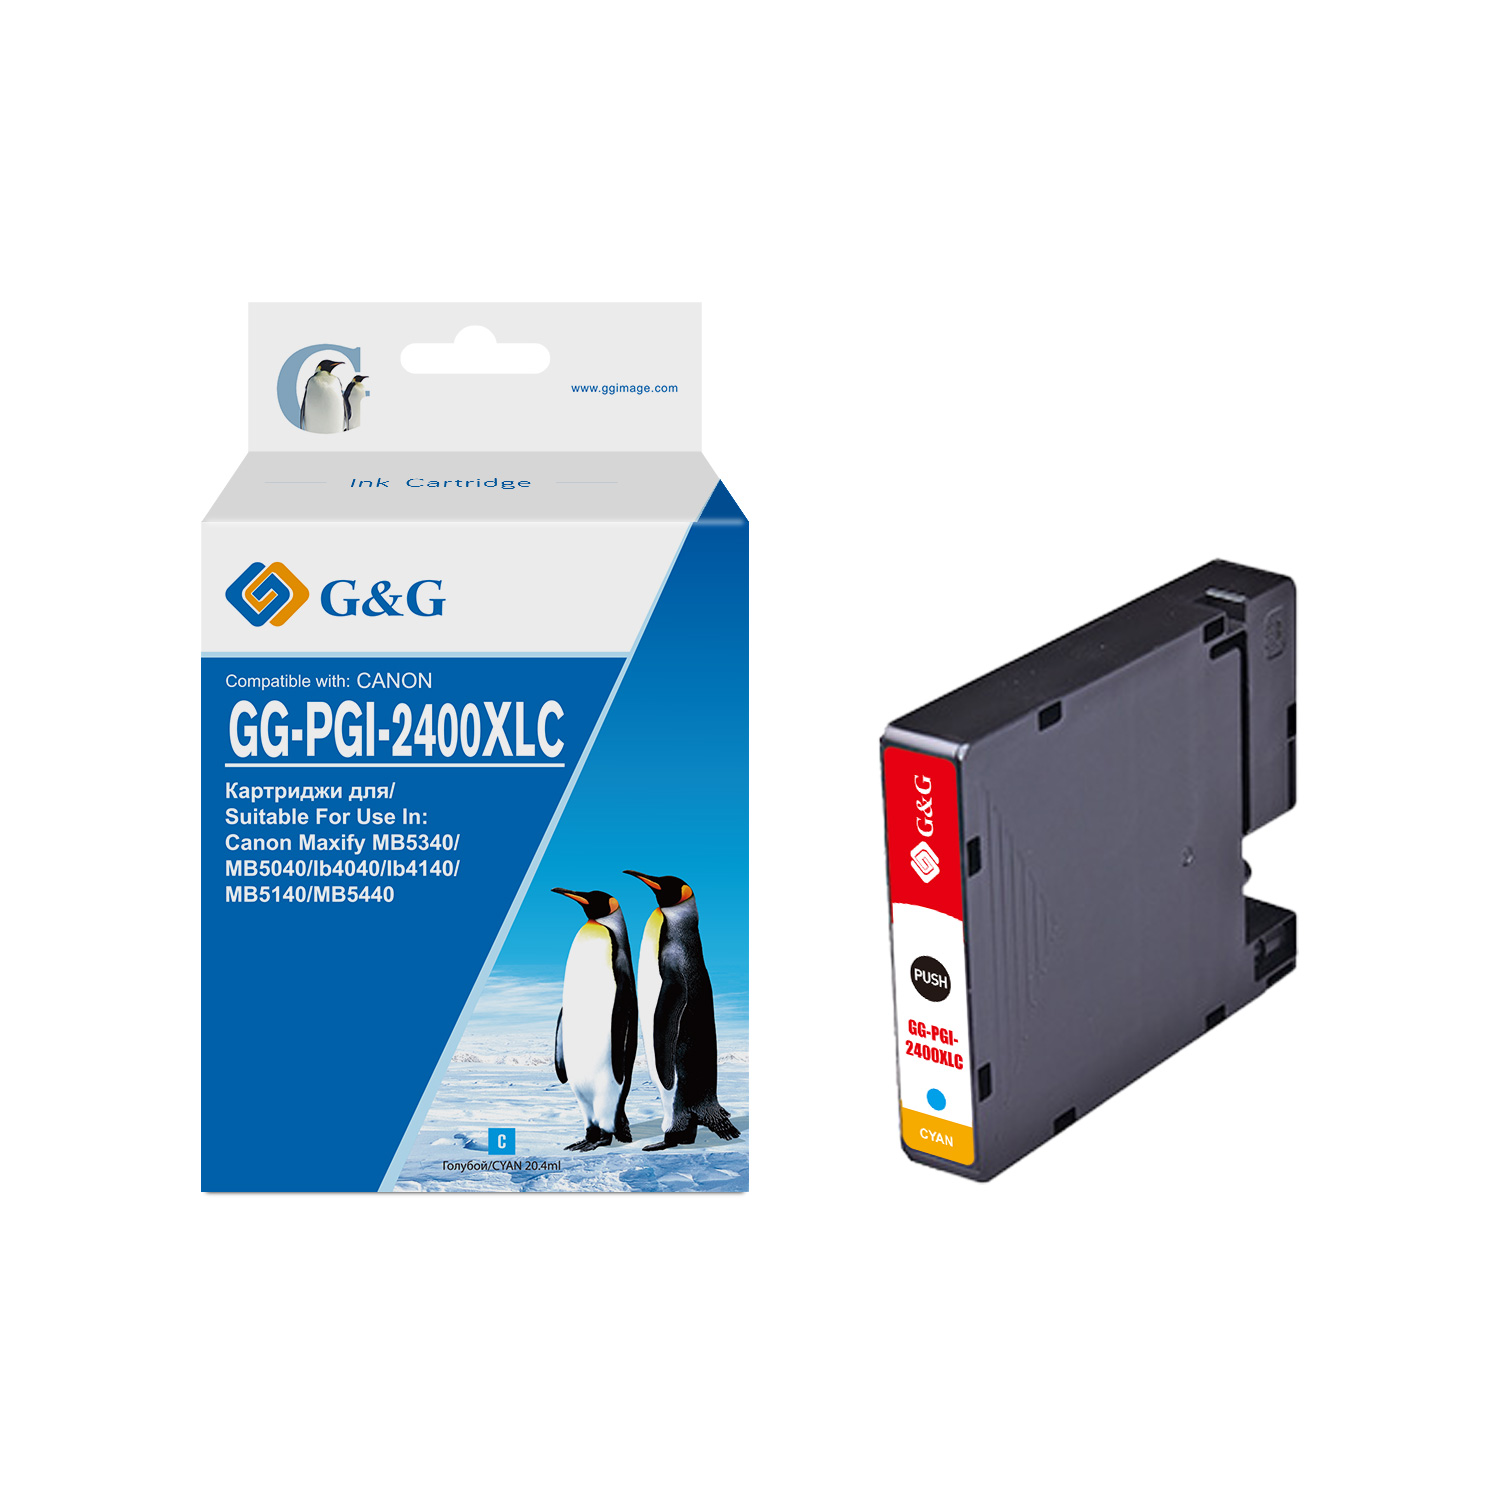 gg-pgi-2400xlc_0